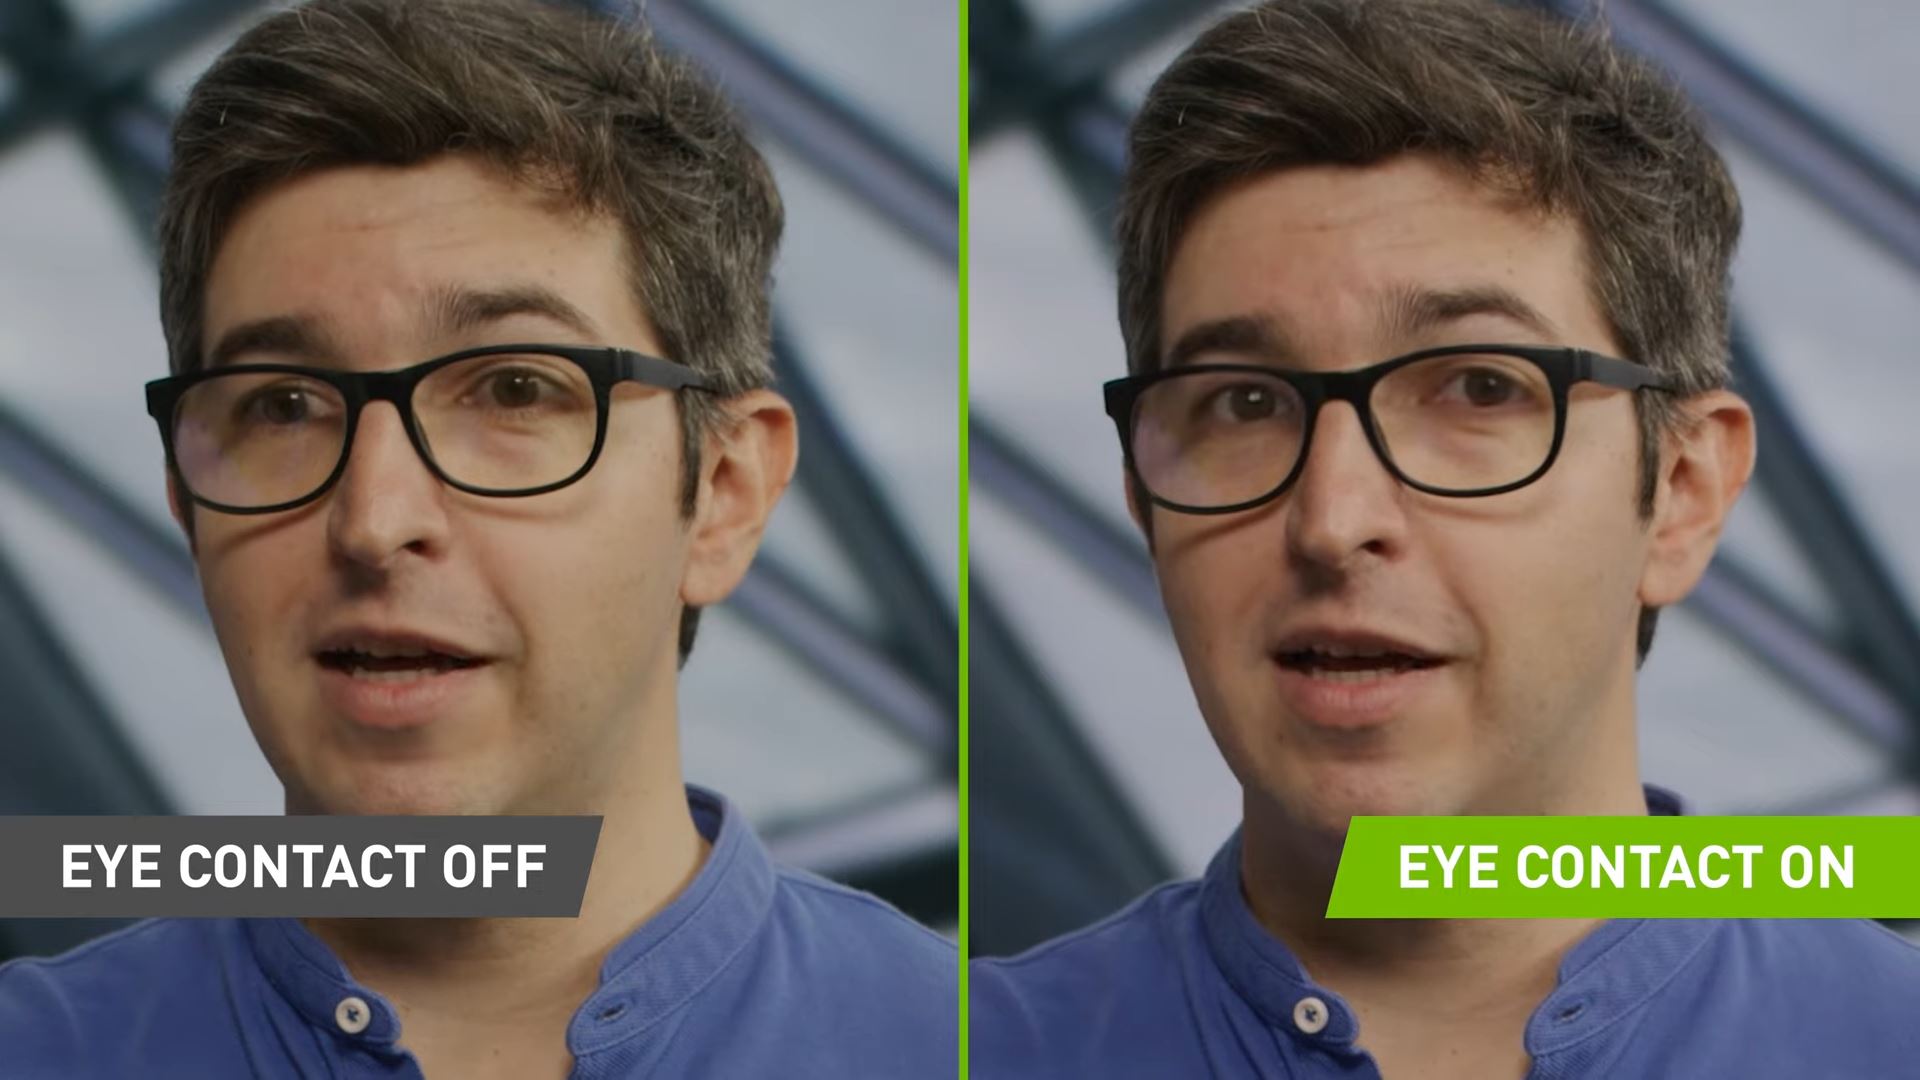 จบปัญหาแอบอ่านโพย! NVIDIA ‘Eye Contact’ ใช้ AI ปรับตาผู้พูดให้มองกล้องตลอดเวลา!